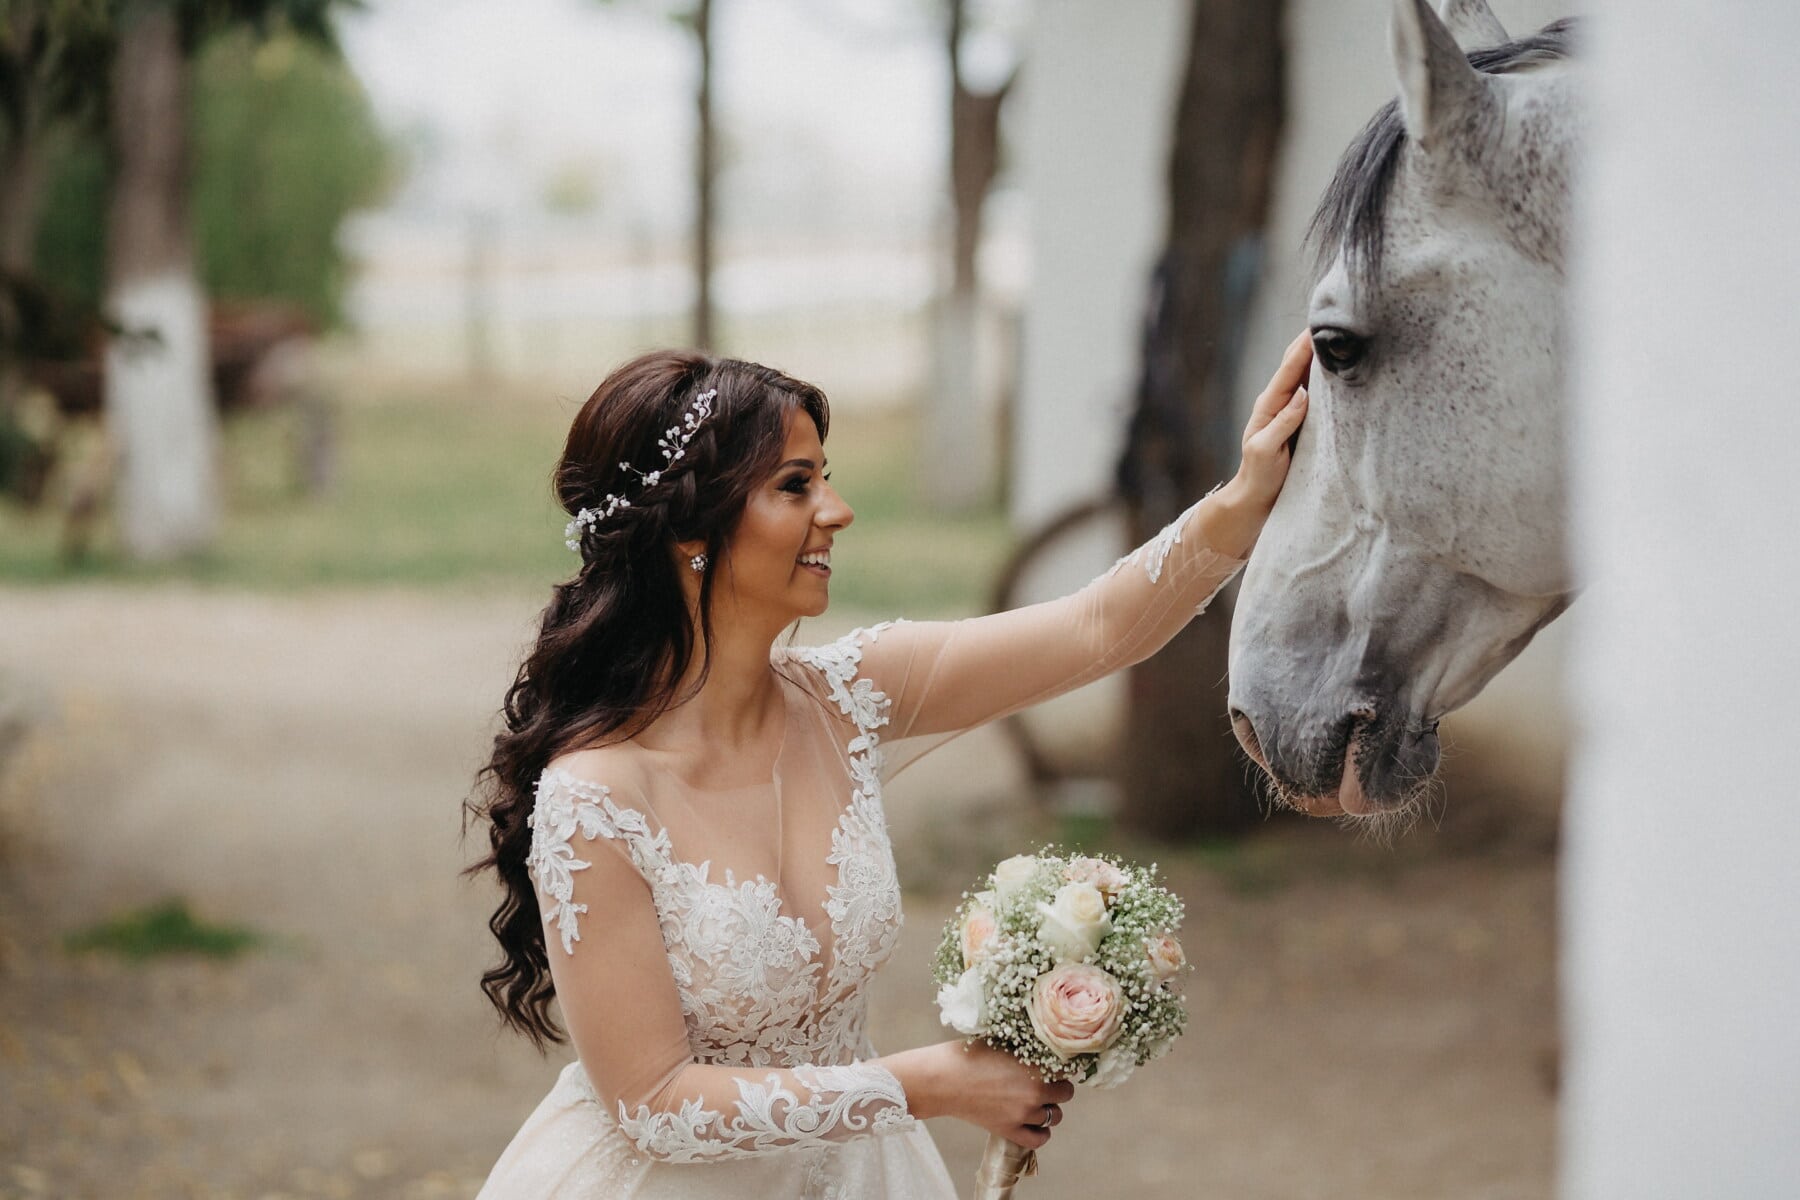 cô dâu, Cô bé xinh đẹp, con ngựa, trắng, đám cưới, người phụ nữ, chú rể, chân dung, thời trang, thiên nhiên